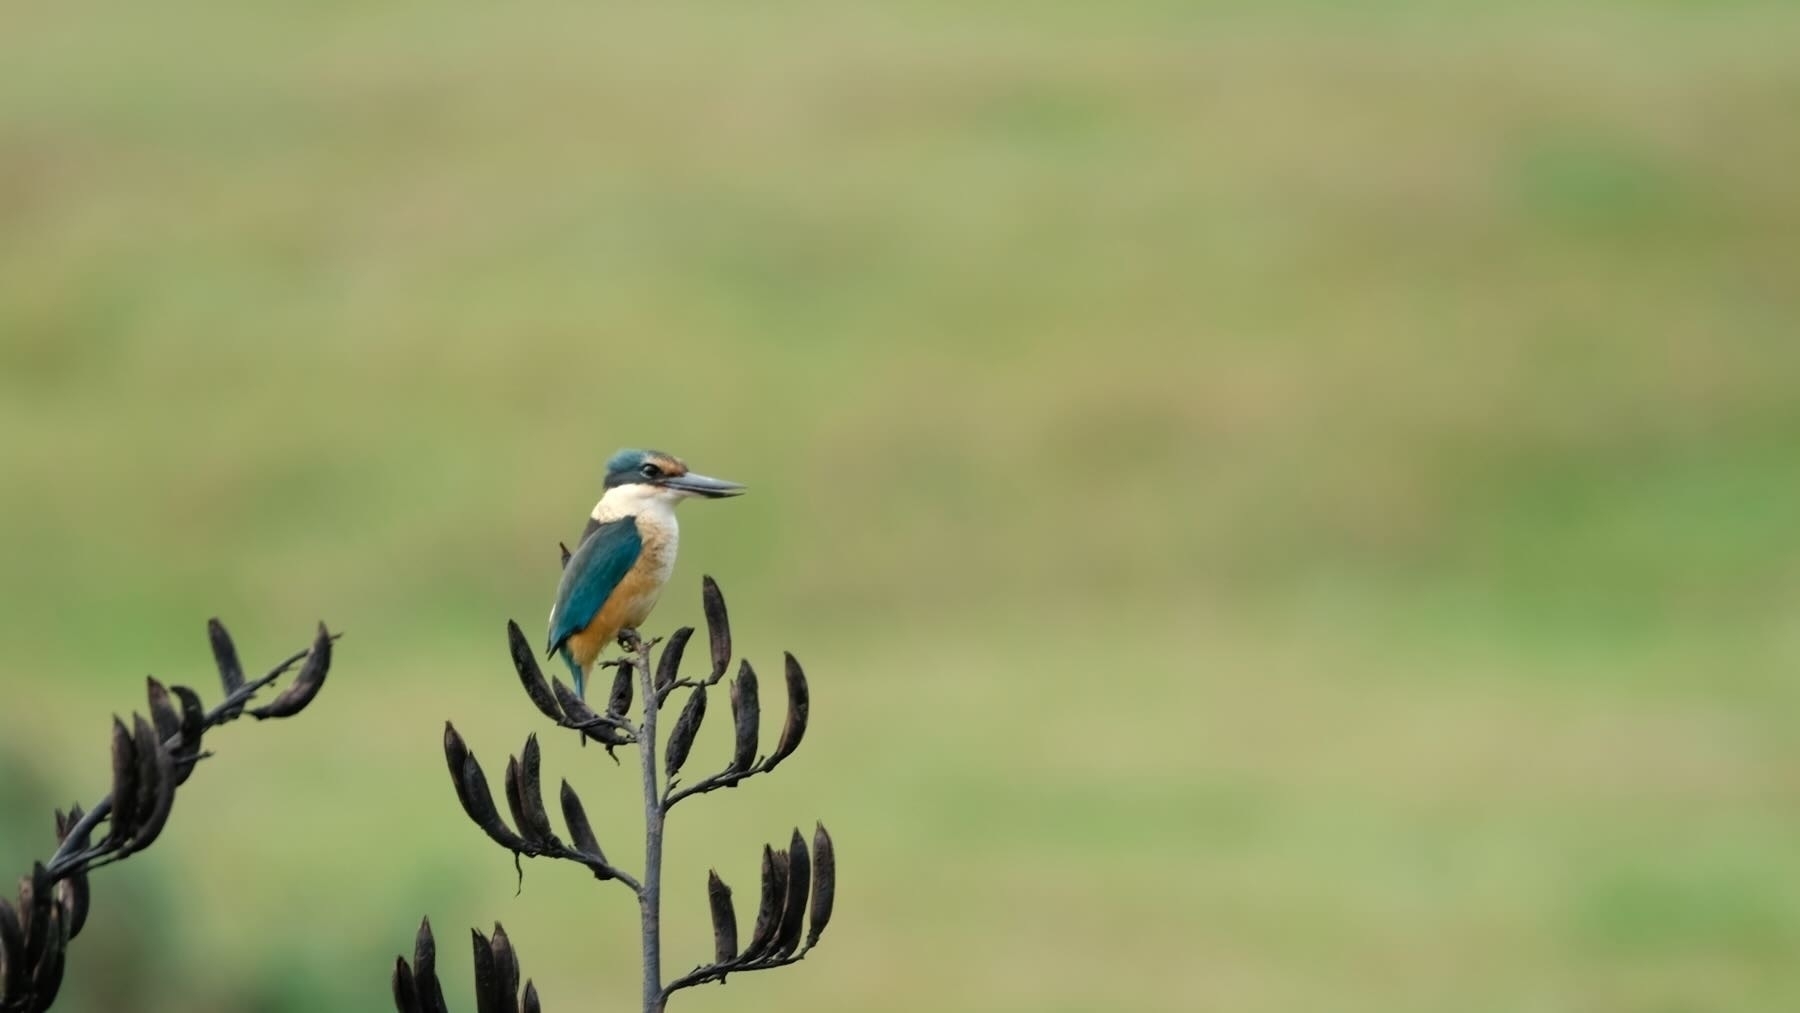 Kingfisher on flax  looks ahead. 